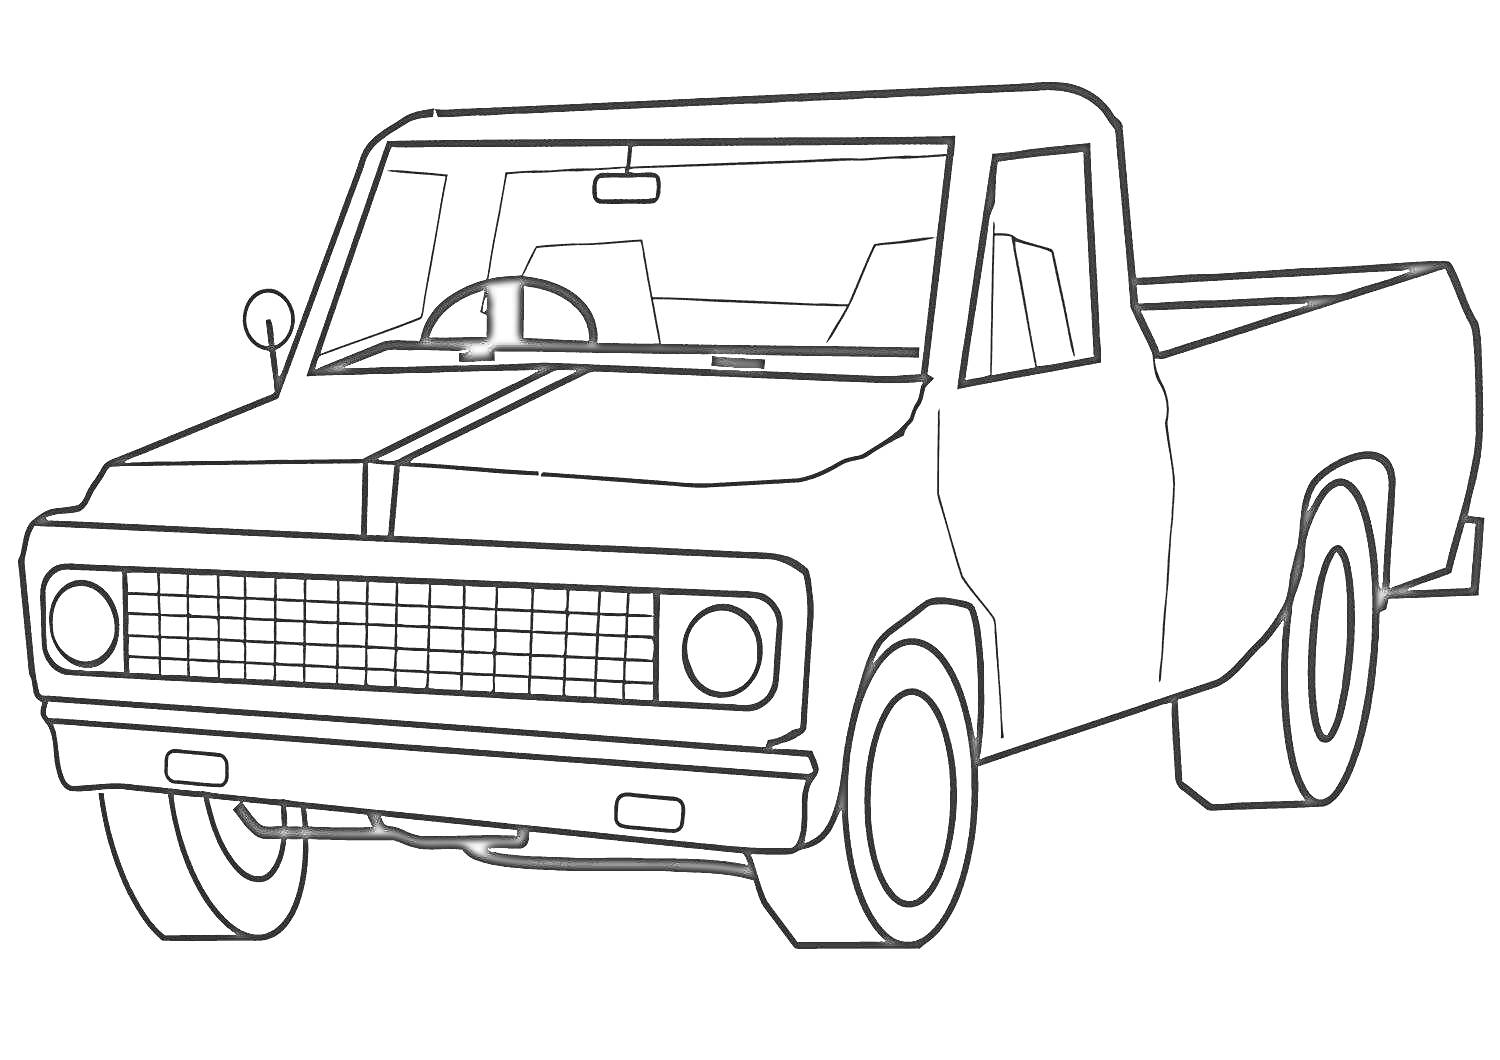 Раскраска Пикап с передней решёткой, передними фарами, передними и задними колёсами, боковыми окнами и задним кузовом